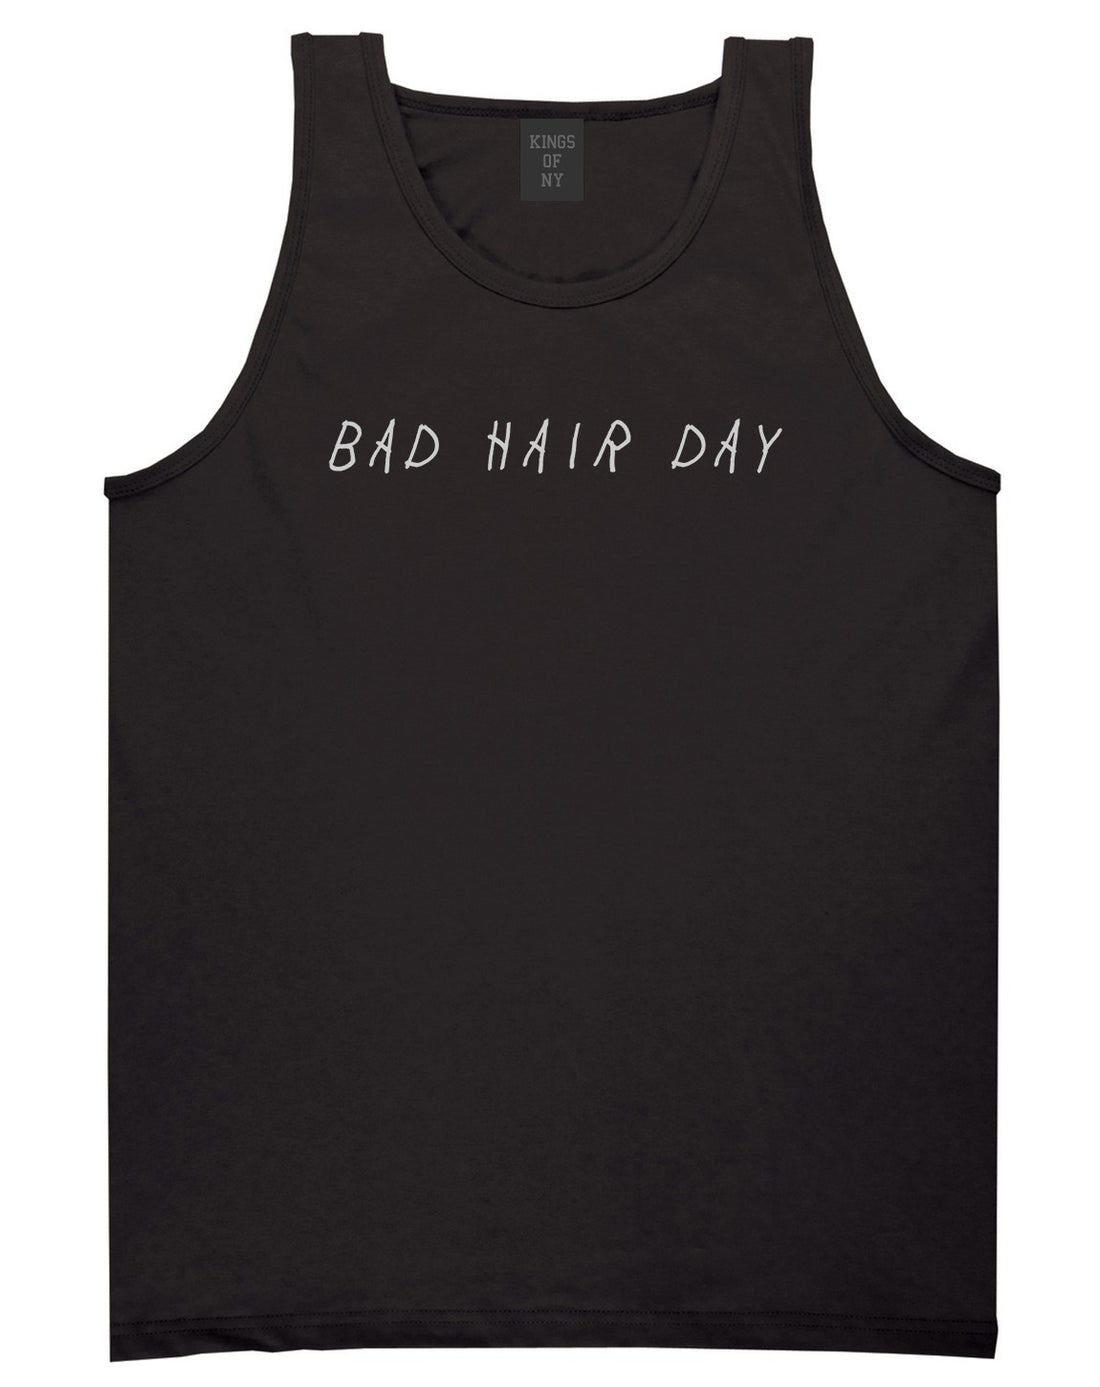 Bad Hair Day Black Tank Top Shirt by Kings Of NY